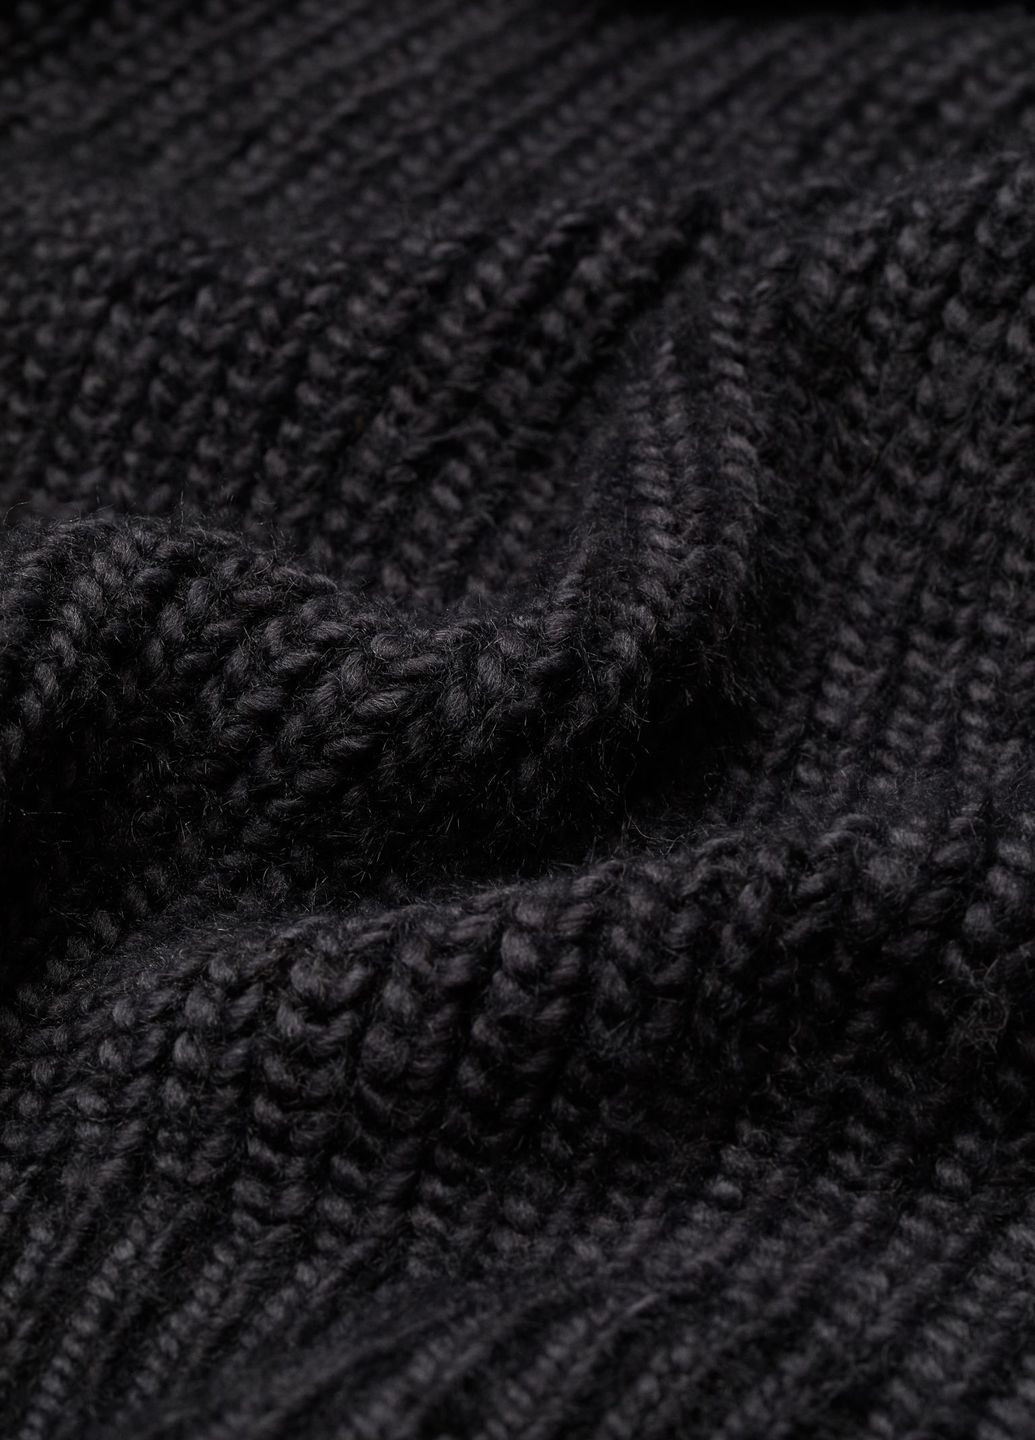 Черный зимний свитер с высоким воротом черный повседневный зима пуловер H&M